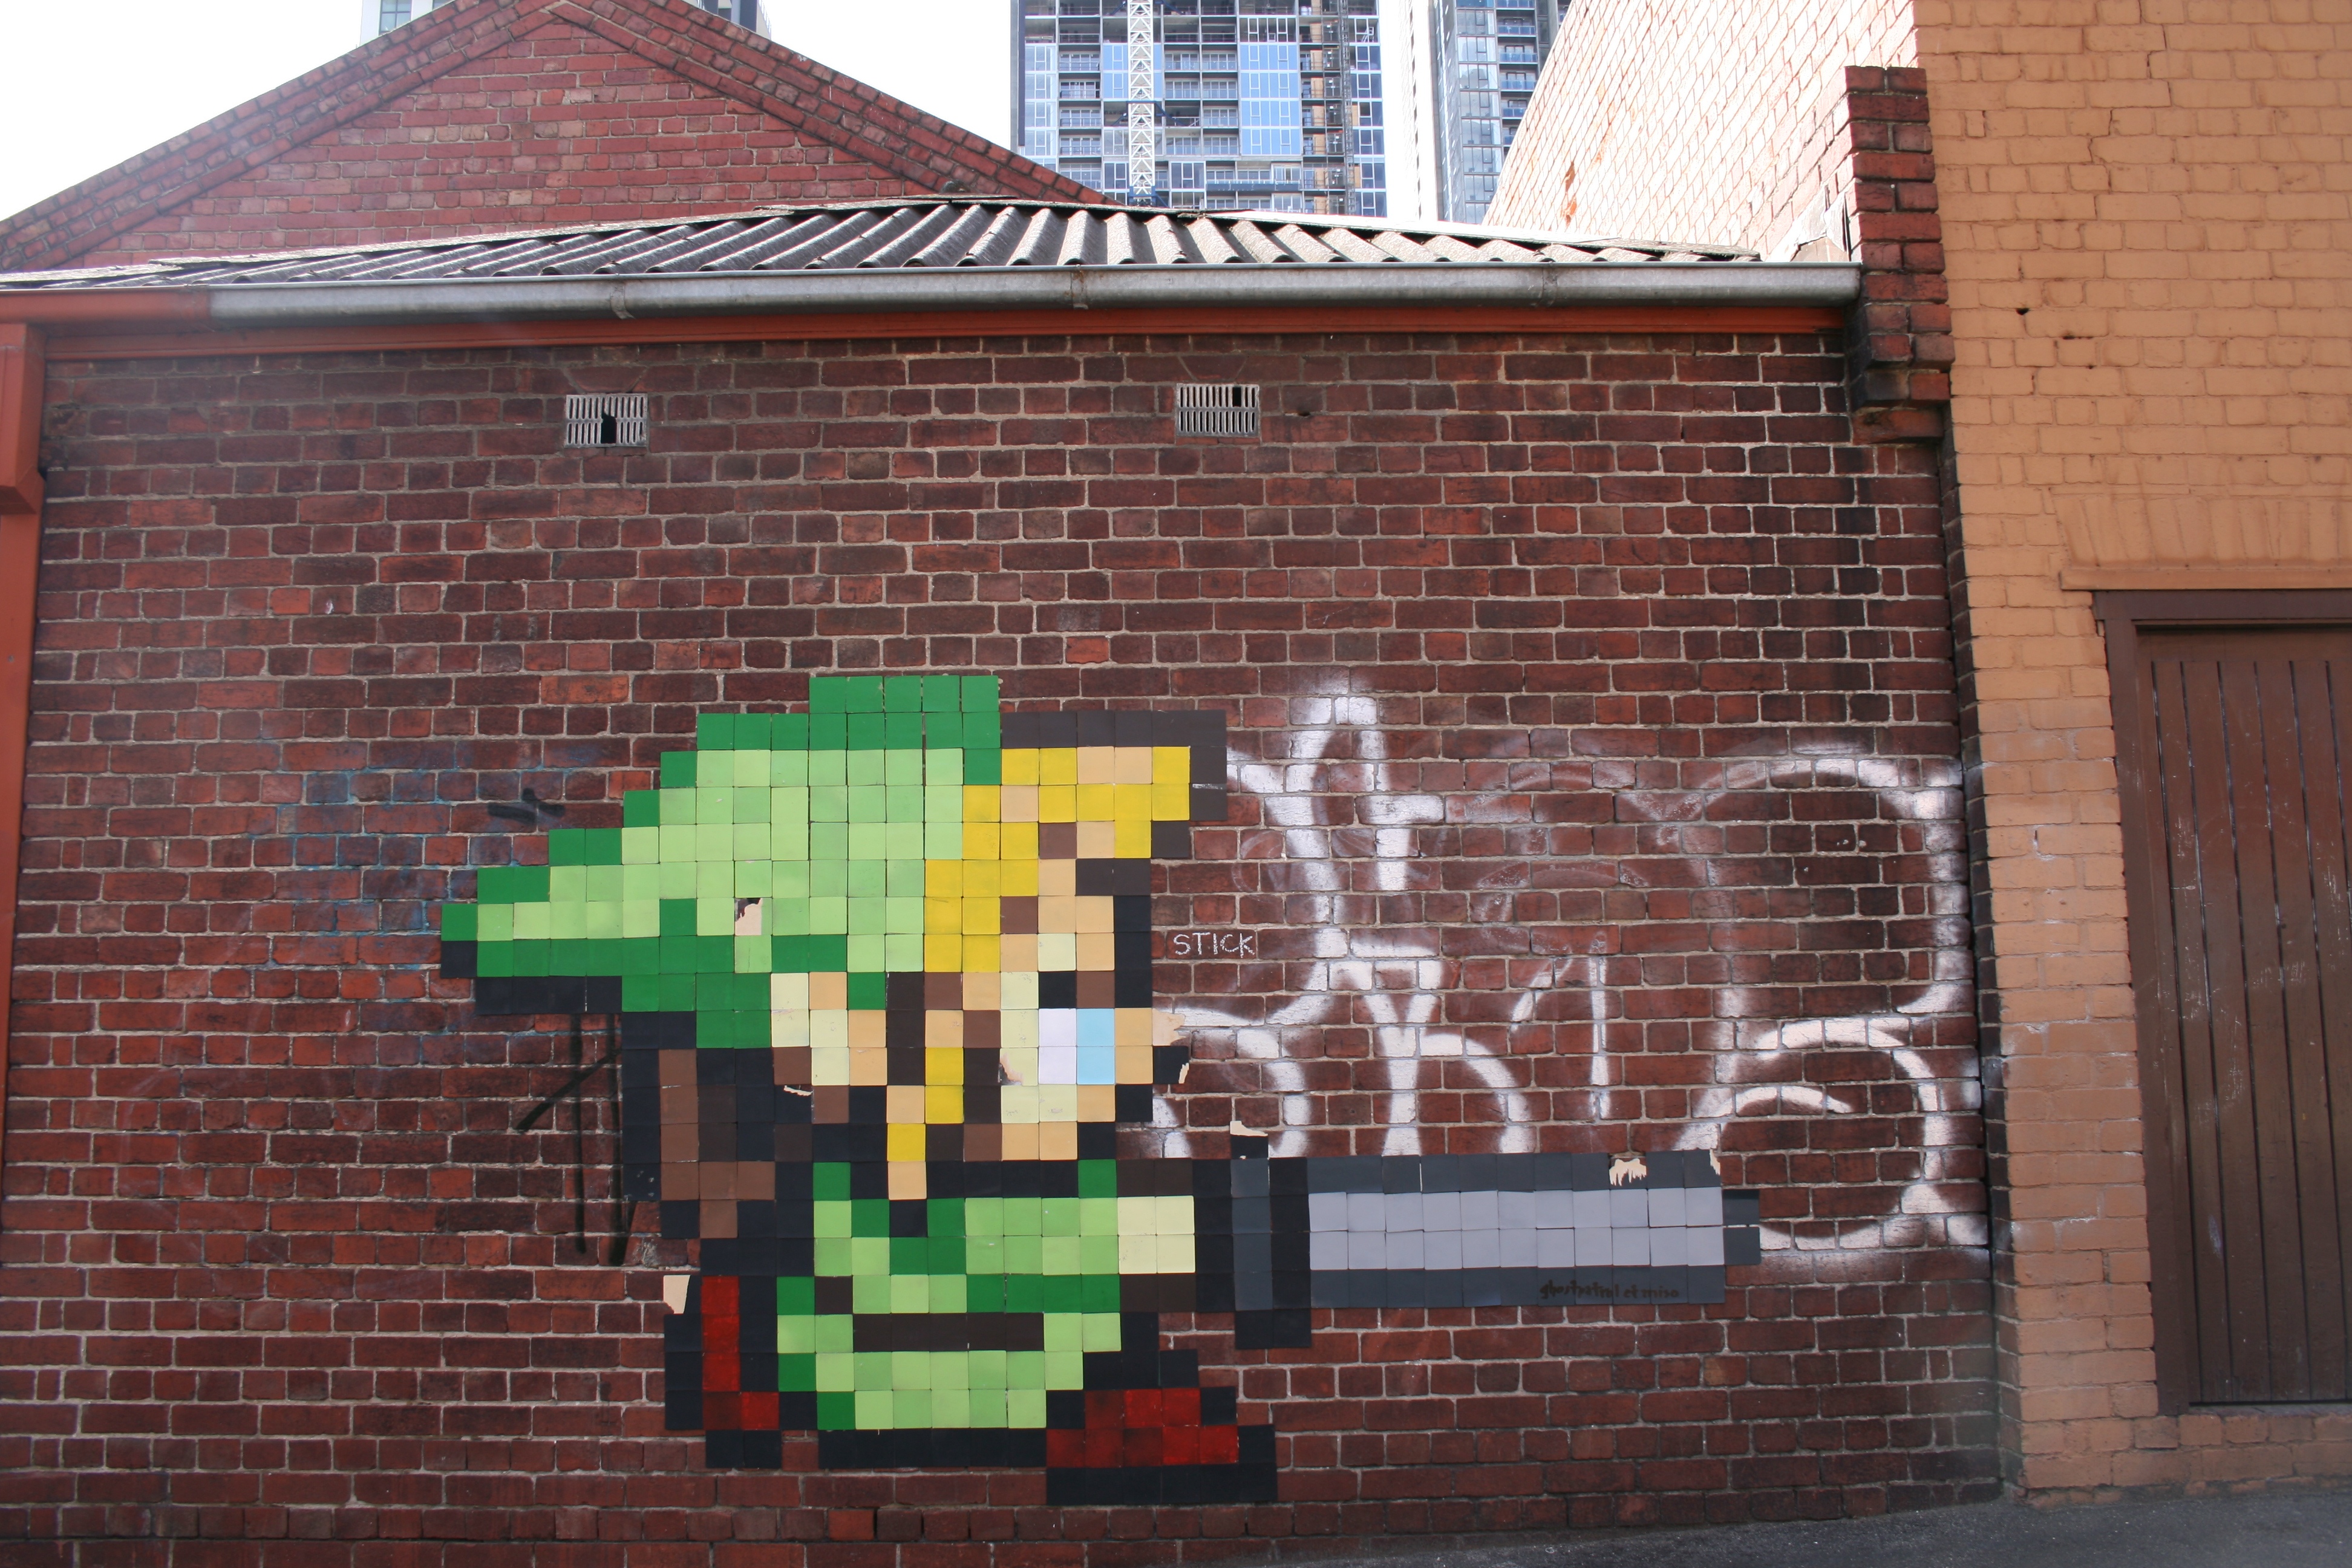 Link, graffiti, The Legend of Zelda, street art, brick wall - desktop wallpaper